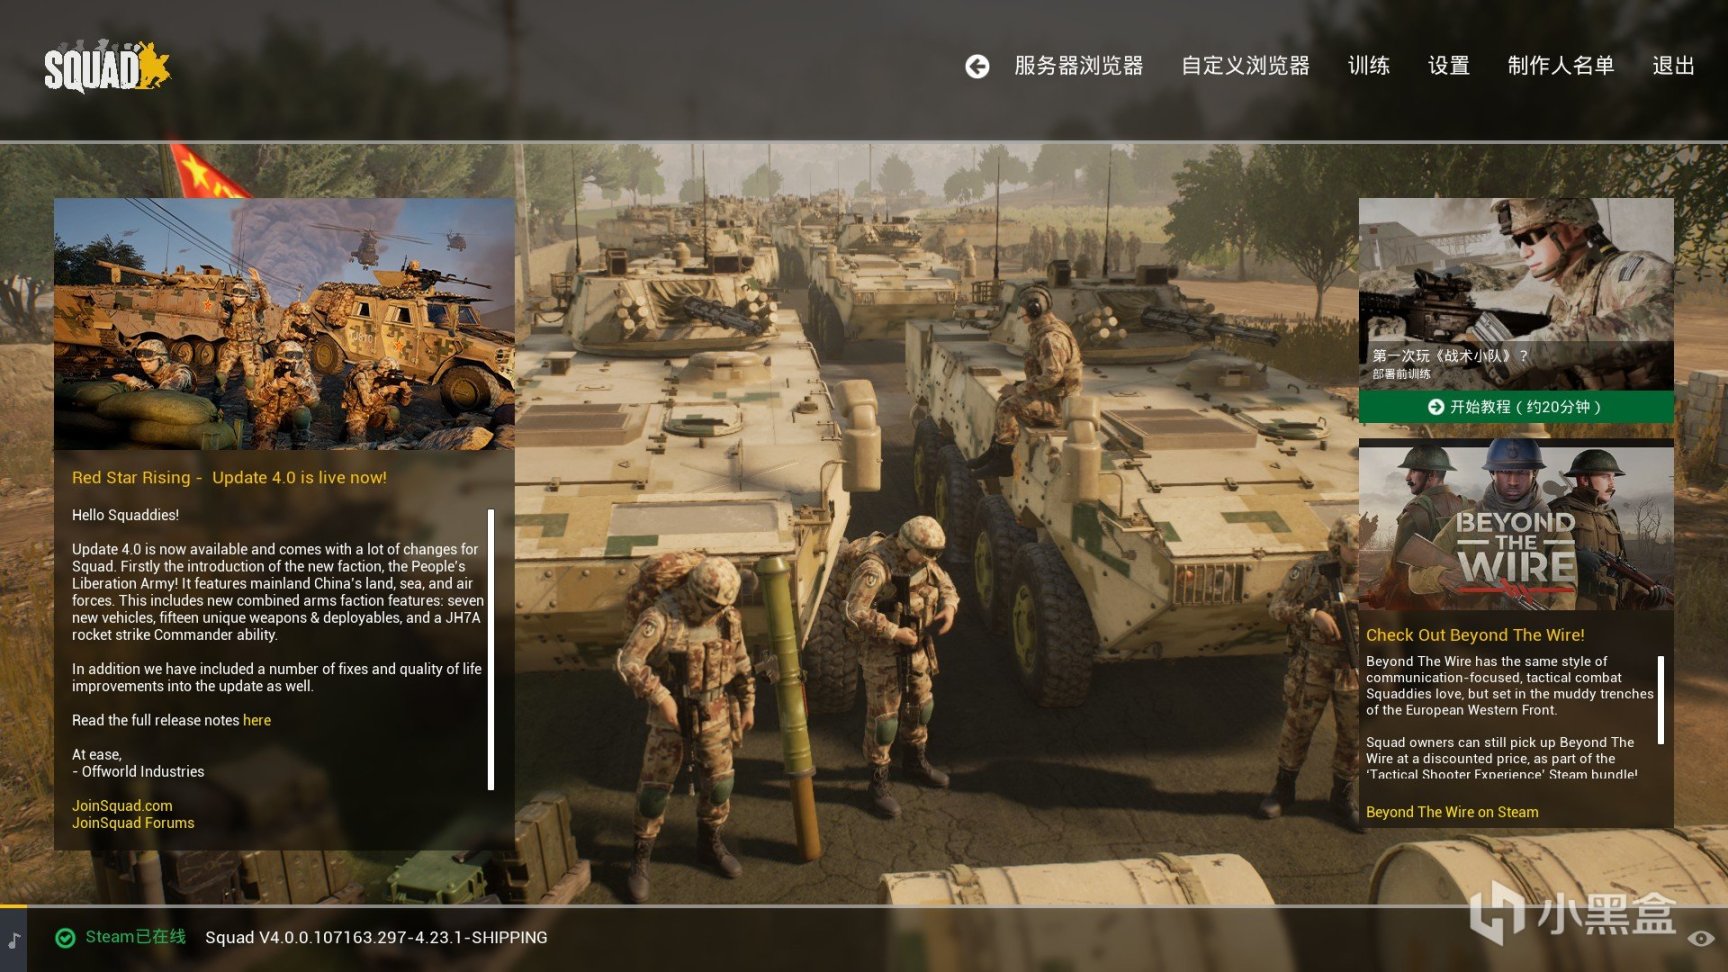 【PC游戏】战术小队4.0更新，红星崛起，中国人民解放军正式加入对局！